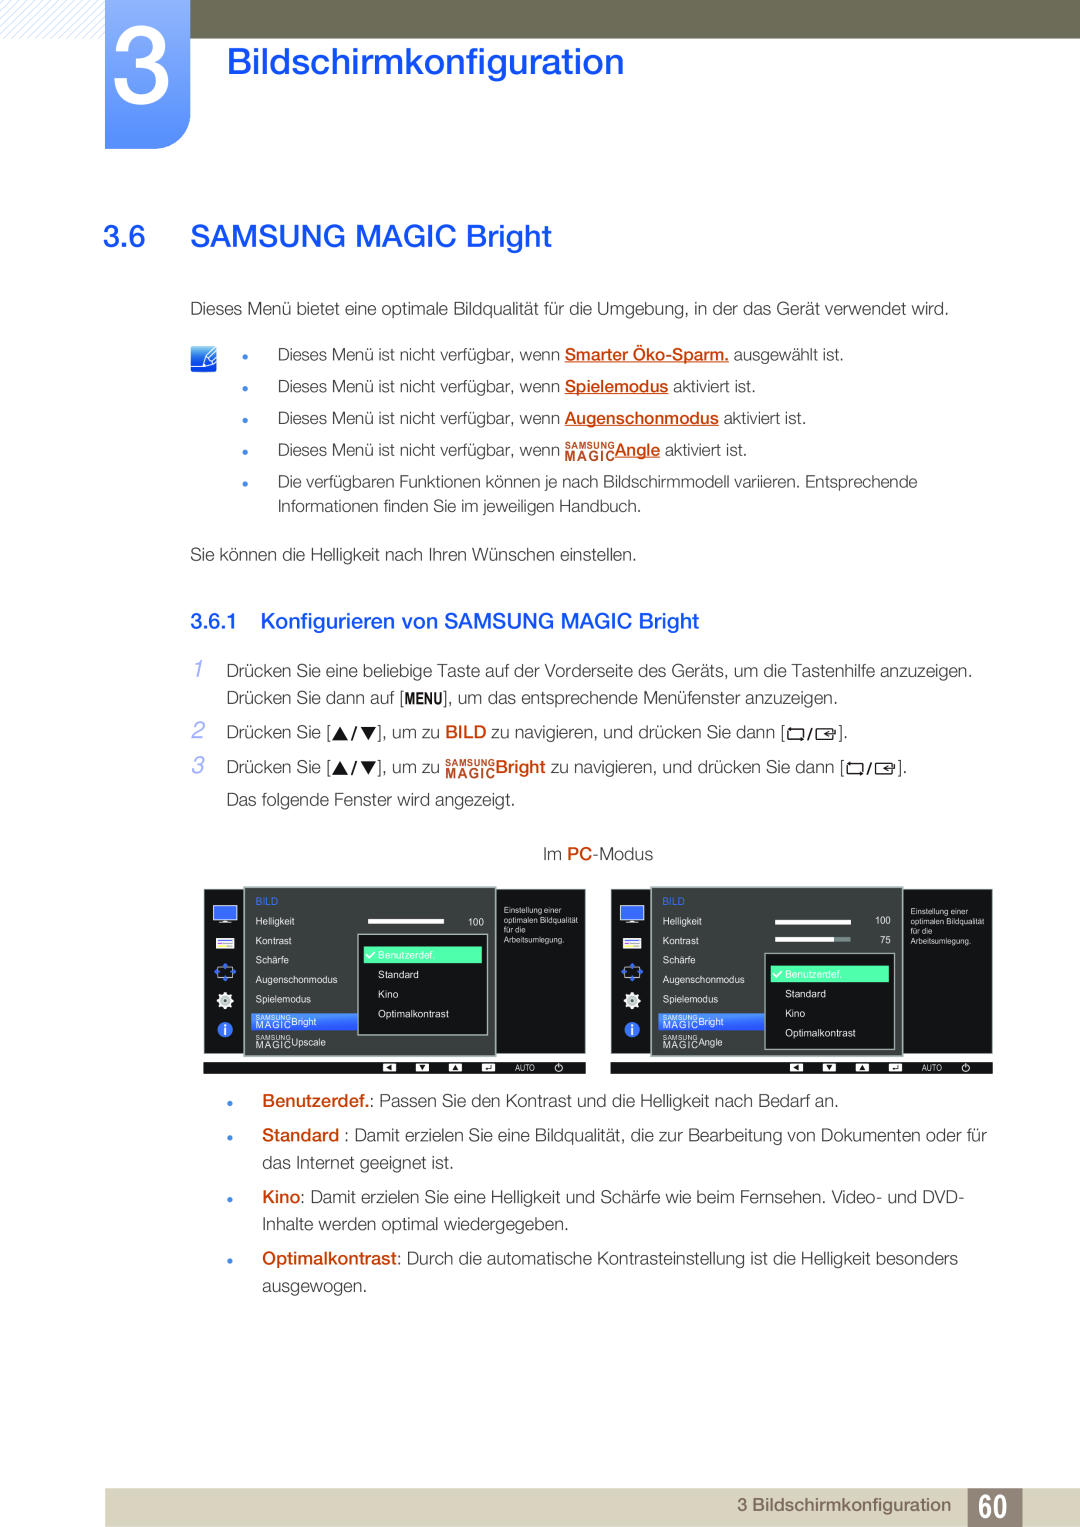 Samsung LS24E65UDW/EN, LS23E65UDC/EN, LS24E45UDLC/EN Konfigurieren von SAMSUNG MAGIC Bright, Bildschirmkonfiguration 